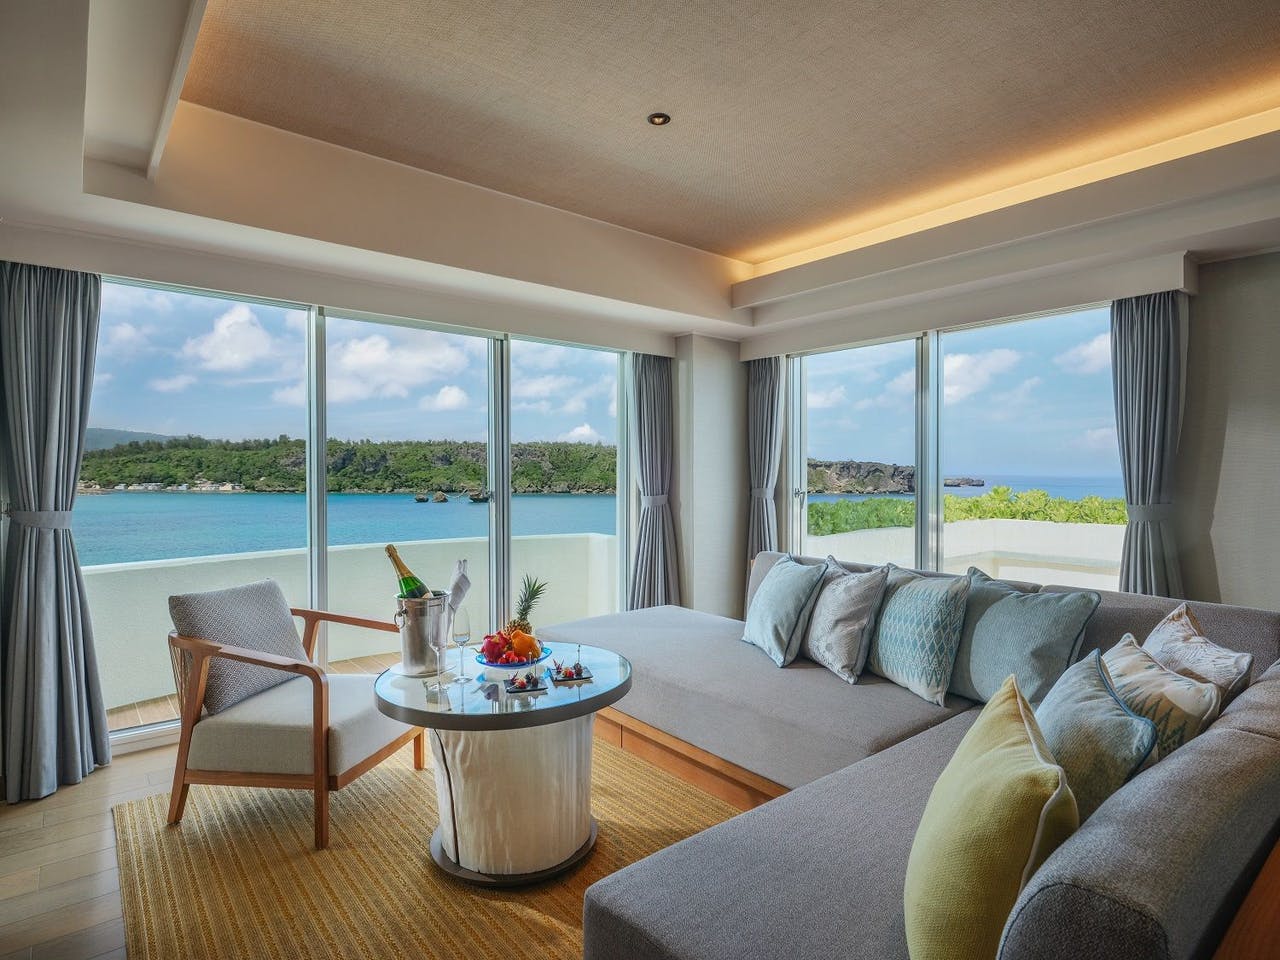 沖縄中部人気ホテルランキング リゾートホテルが集まる人気エリアの8選